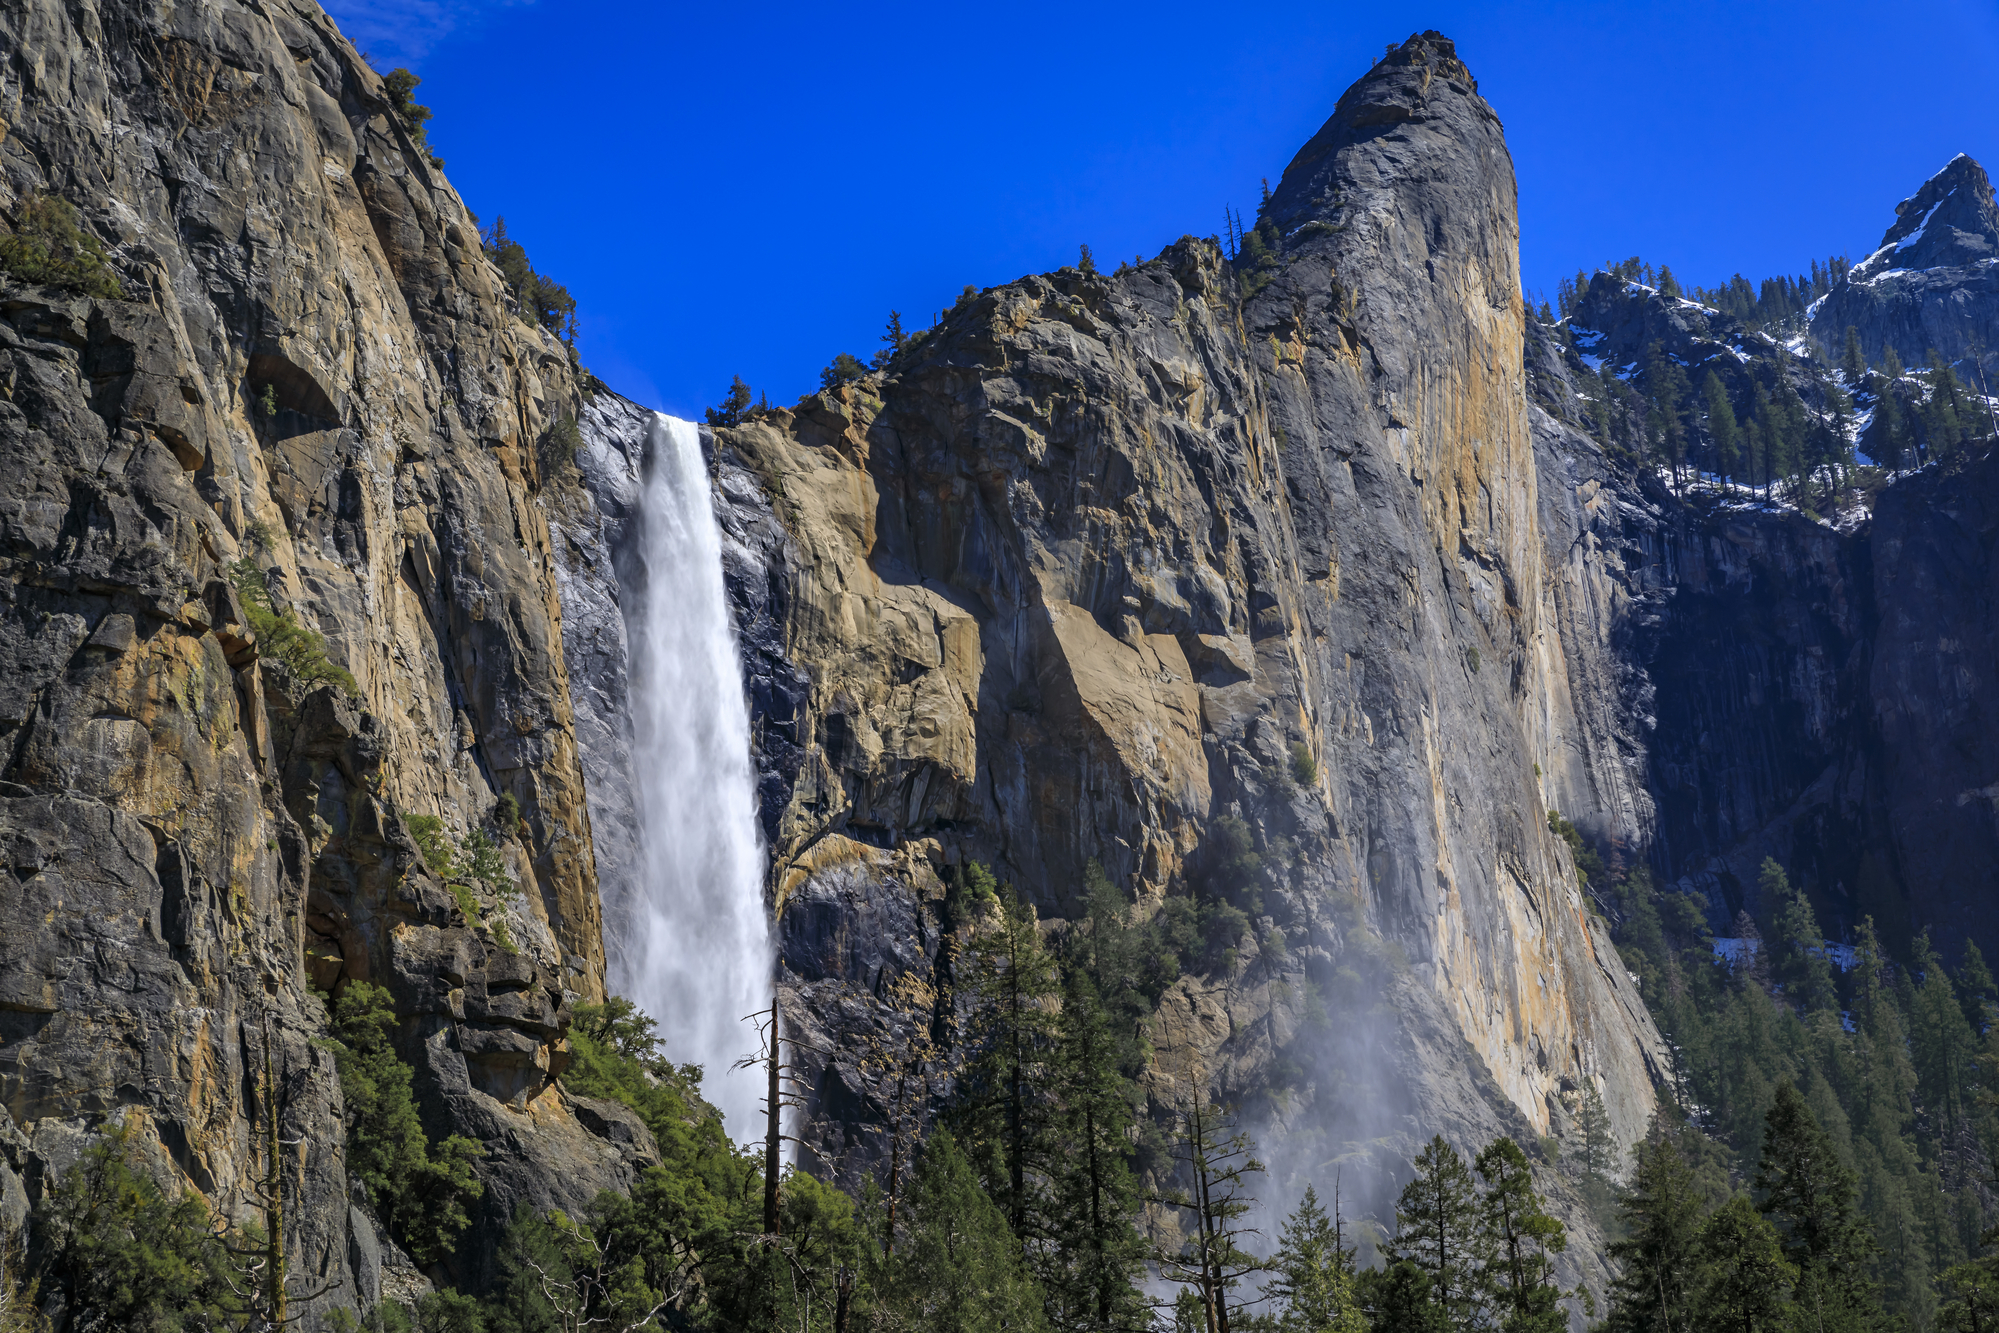 Bridalveil falls in Yosemite National Park